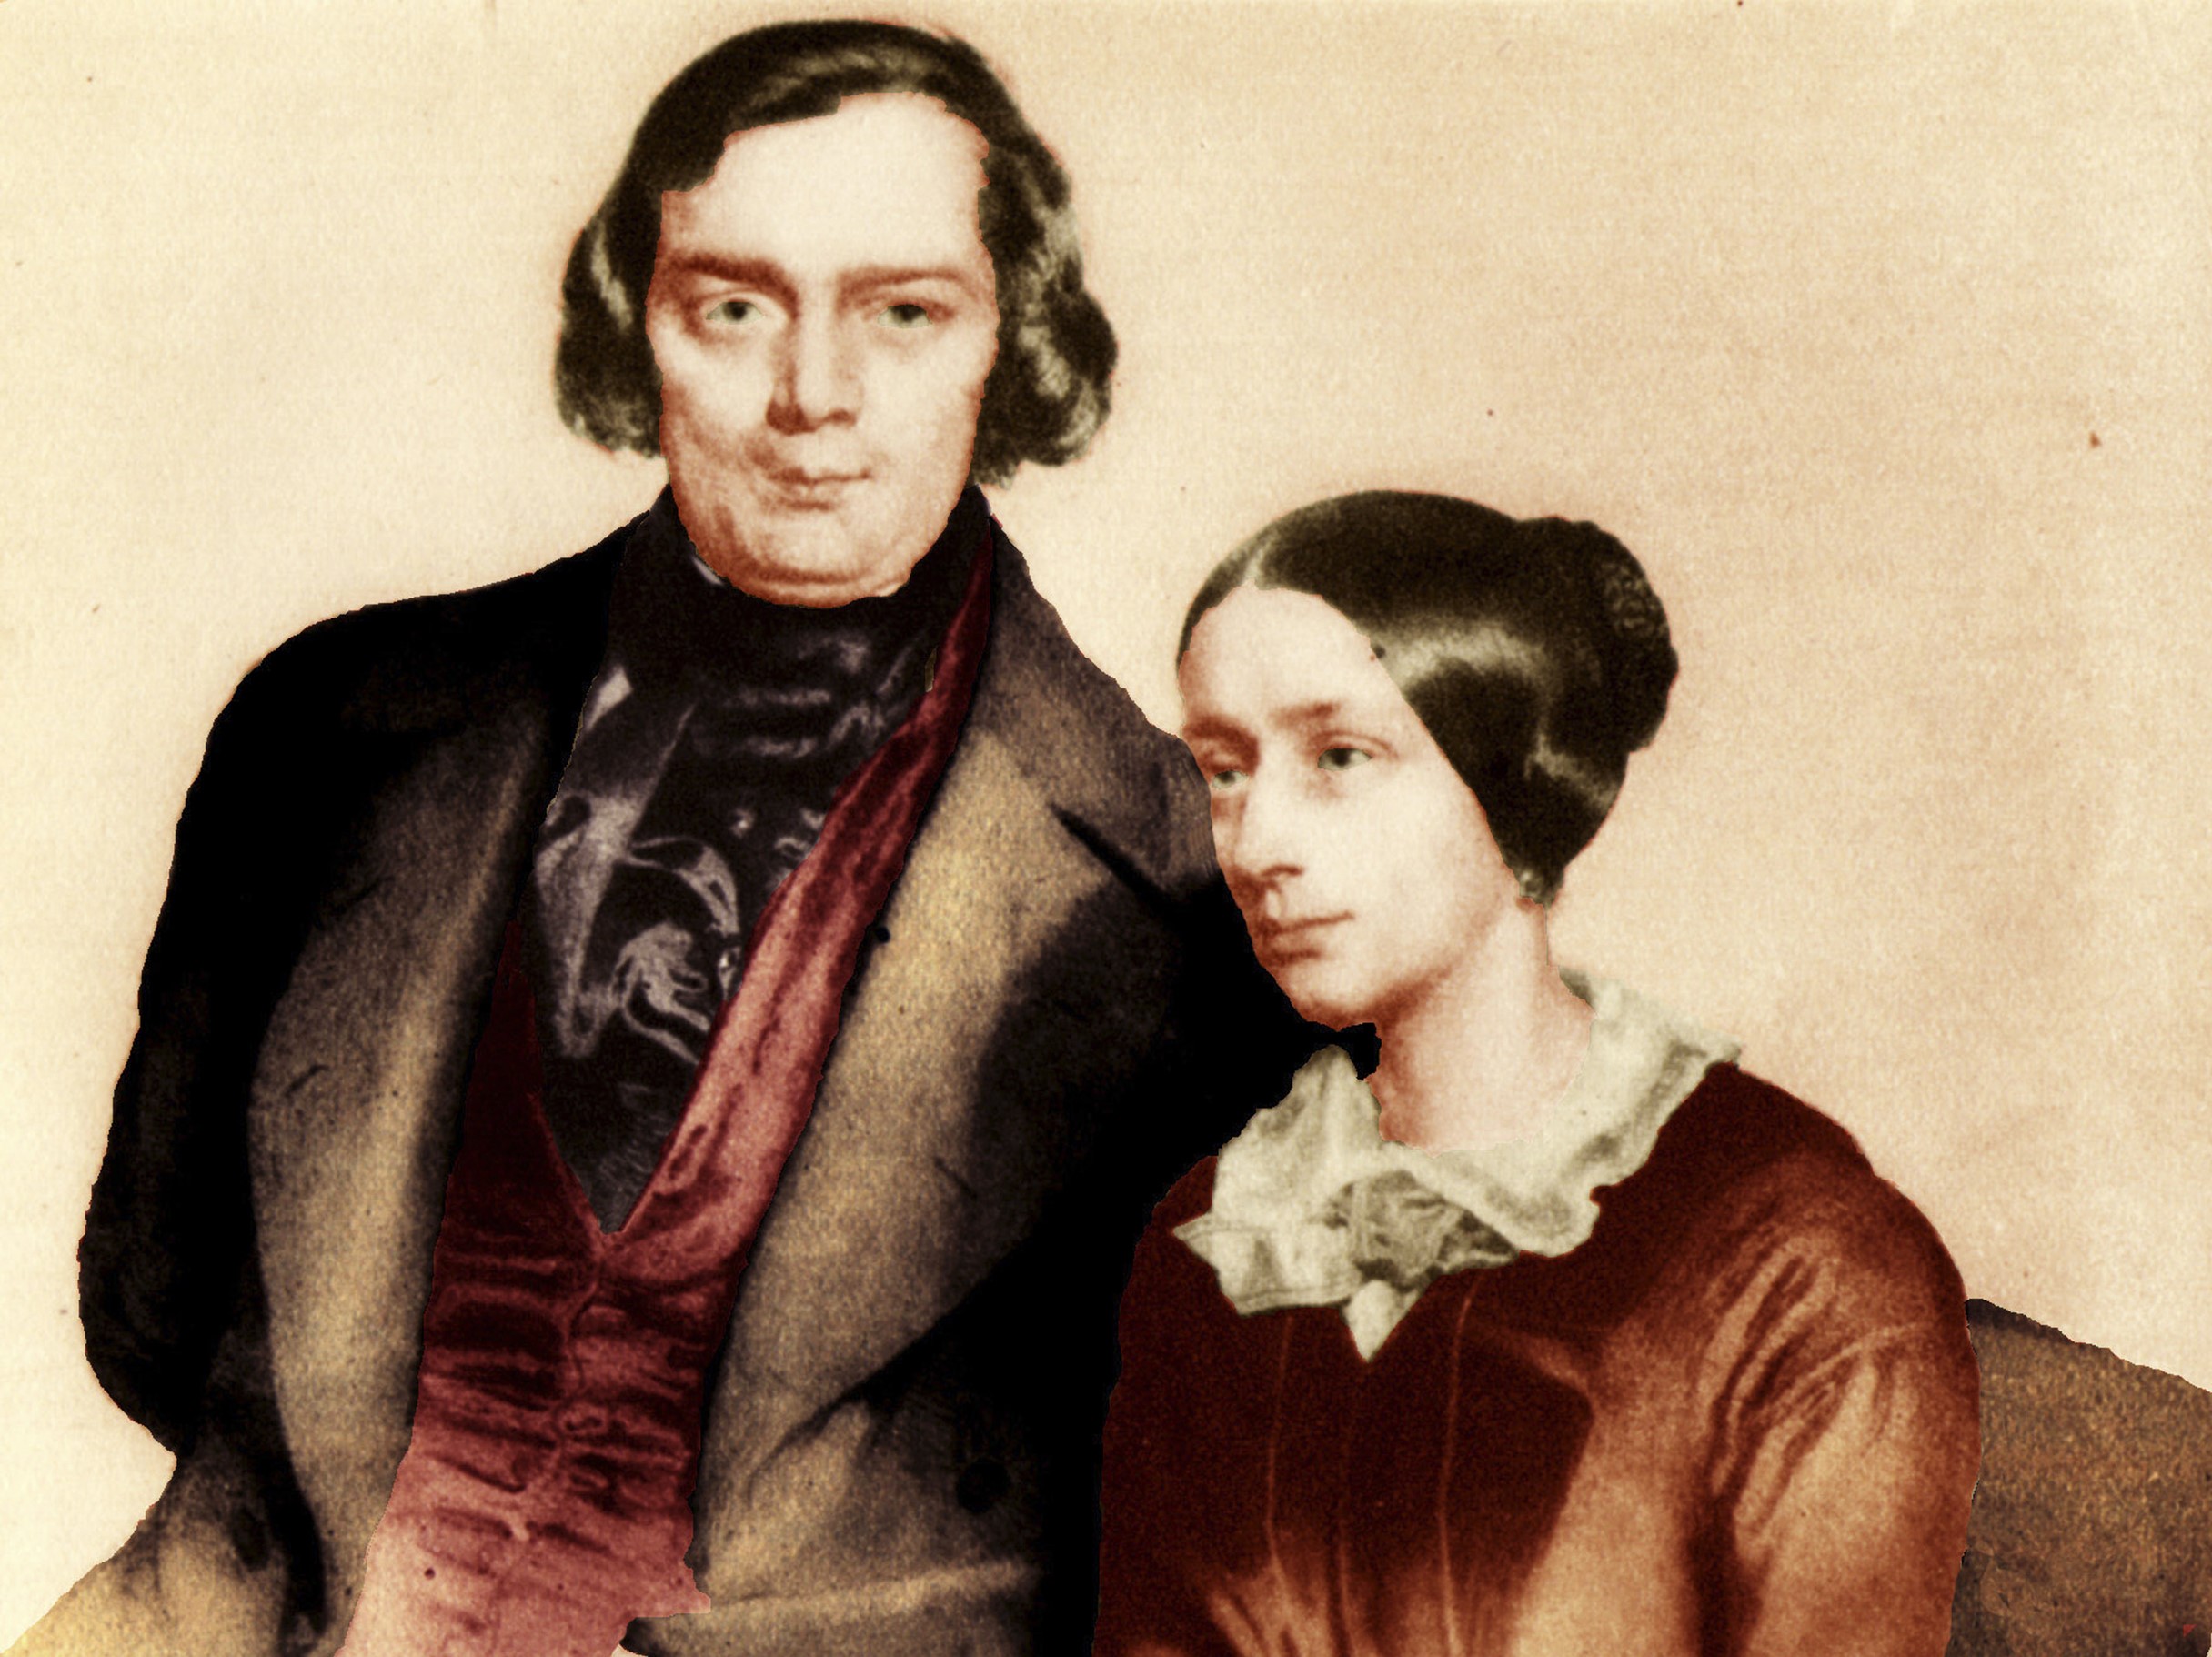 Ρόμπερτ Σούμαν και Κλάρα Βικ (Robert Schumann & Clara Wieck)